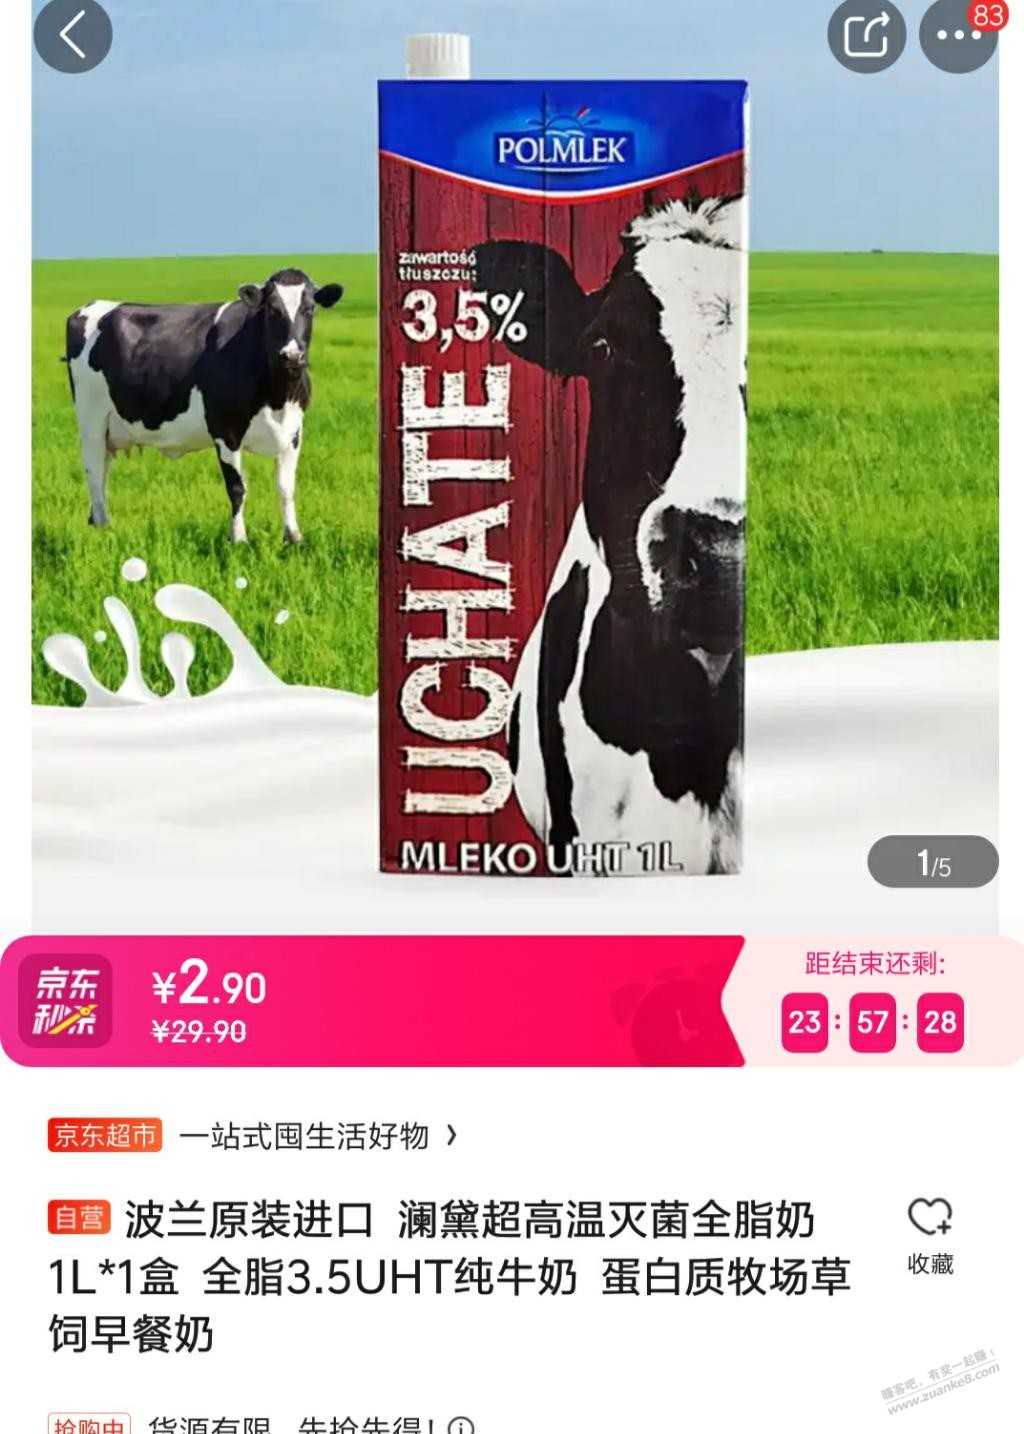 这个牛奶锁单的在放货-可以捡漏-惠小助(52huixz.com)